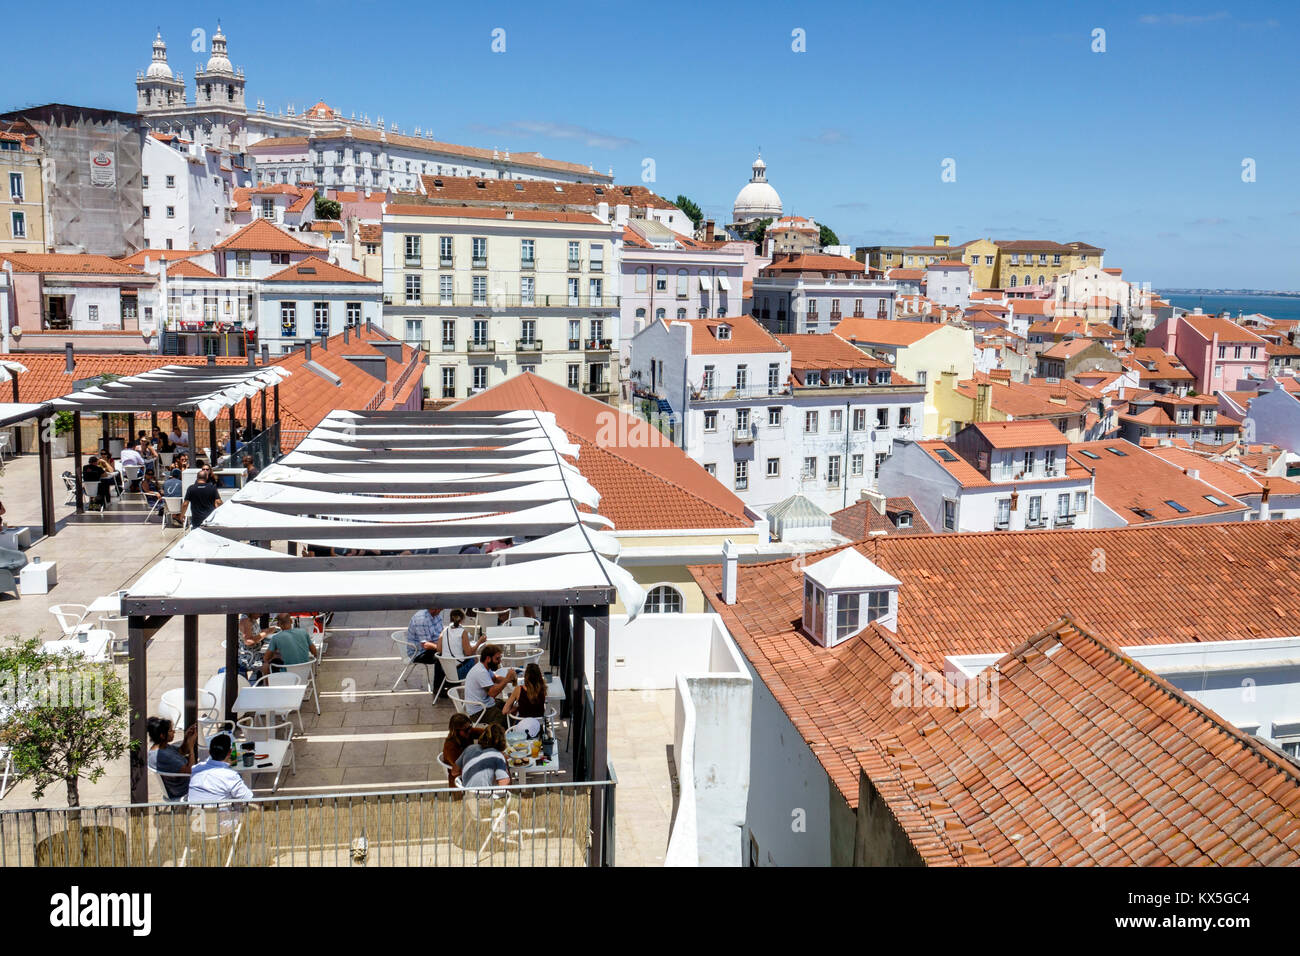 Lisbonne Portugal,Alfama,quartier historique,Miradouro das Portas do sol,terrasse,point de vue,horizon,toits,résidences,appartement buil Banque D'Images